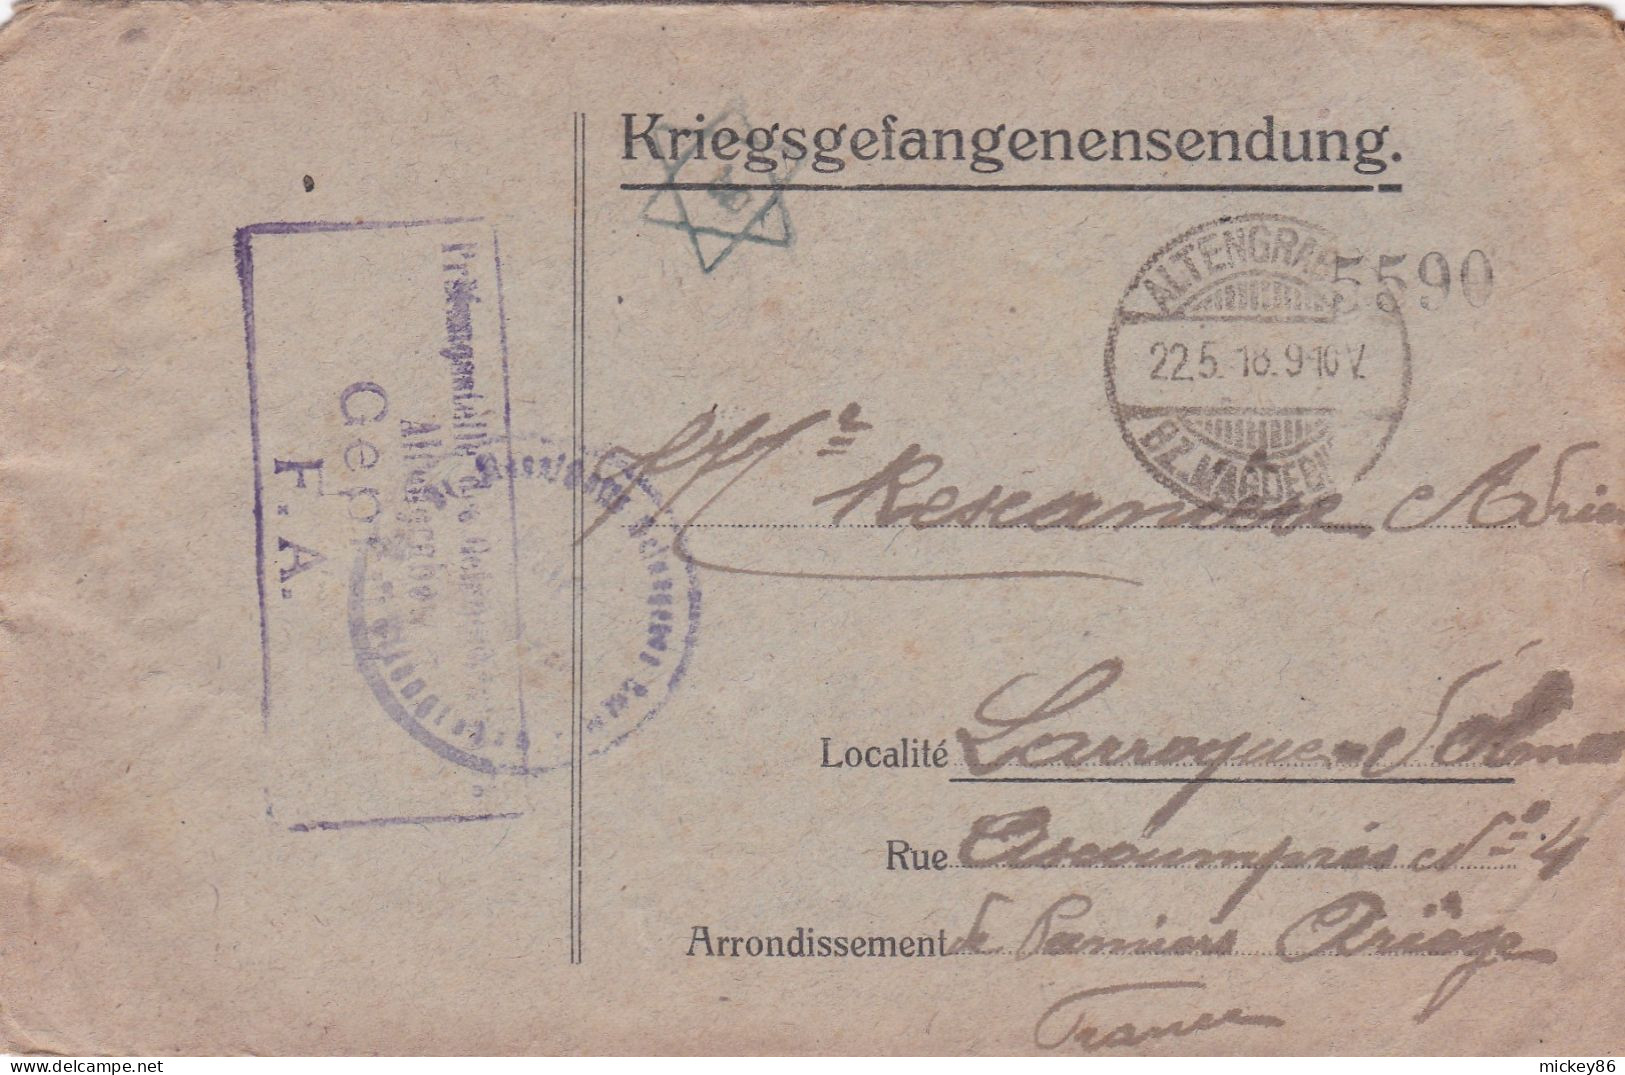 Guerre 14-18 -1918--lettre Censurée D' ALTEN-GRADOW  Pour LAROQUE D'OLMES-09--Cachets--courrier Inclus - Guerra Del 1914-18